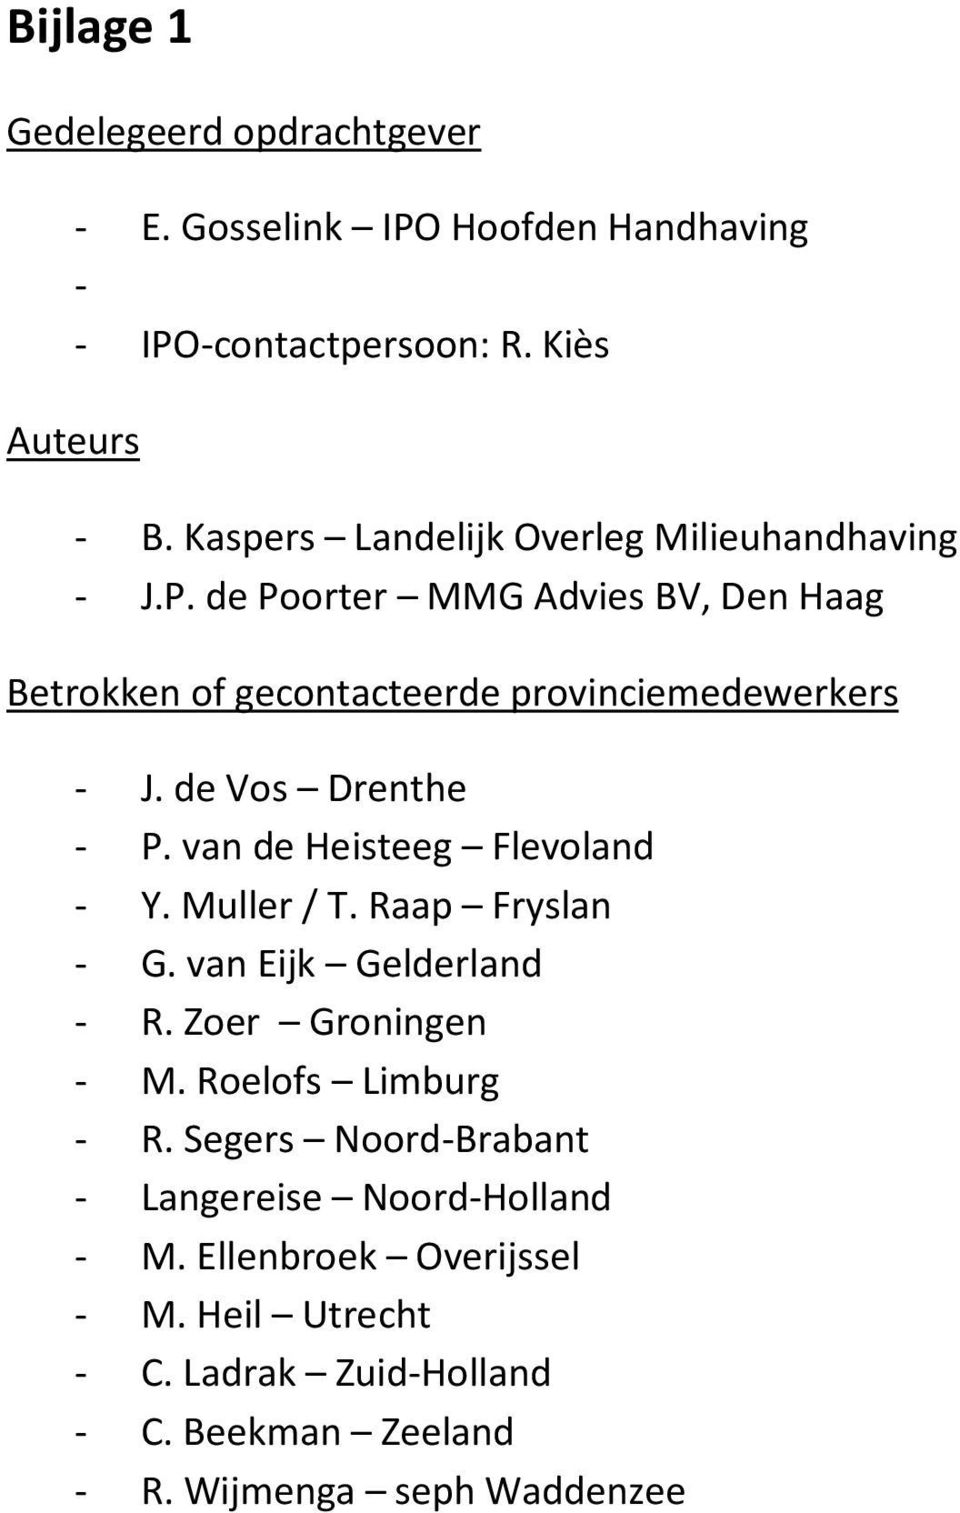 de Vos Drenthe - P. van de Heisteeg Flevoland - Y. Muller / T. Raap Fryslan - G. van Eijk Gelderland - R. Zoer Groningen - M.